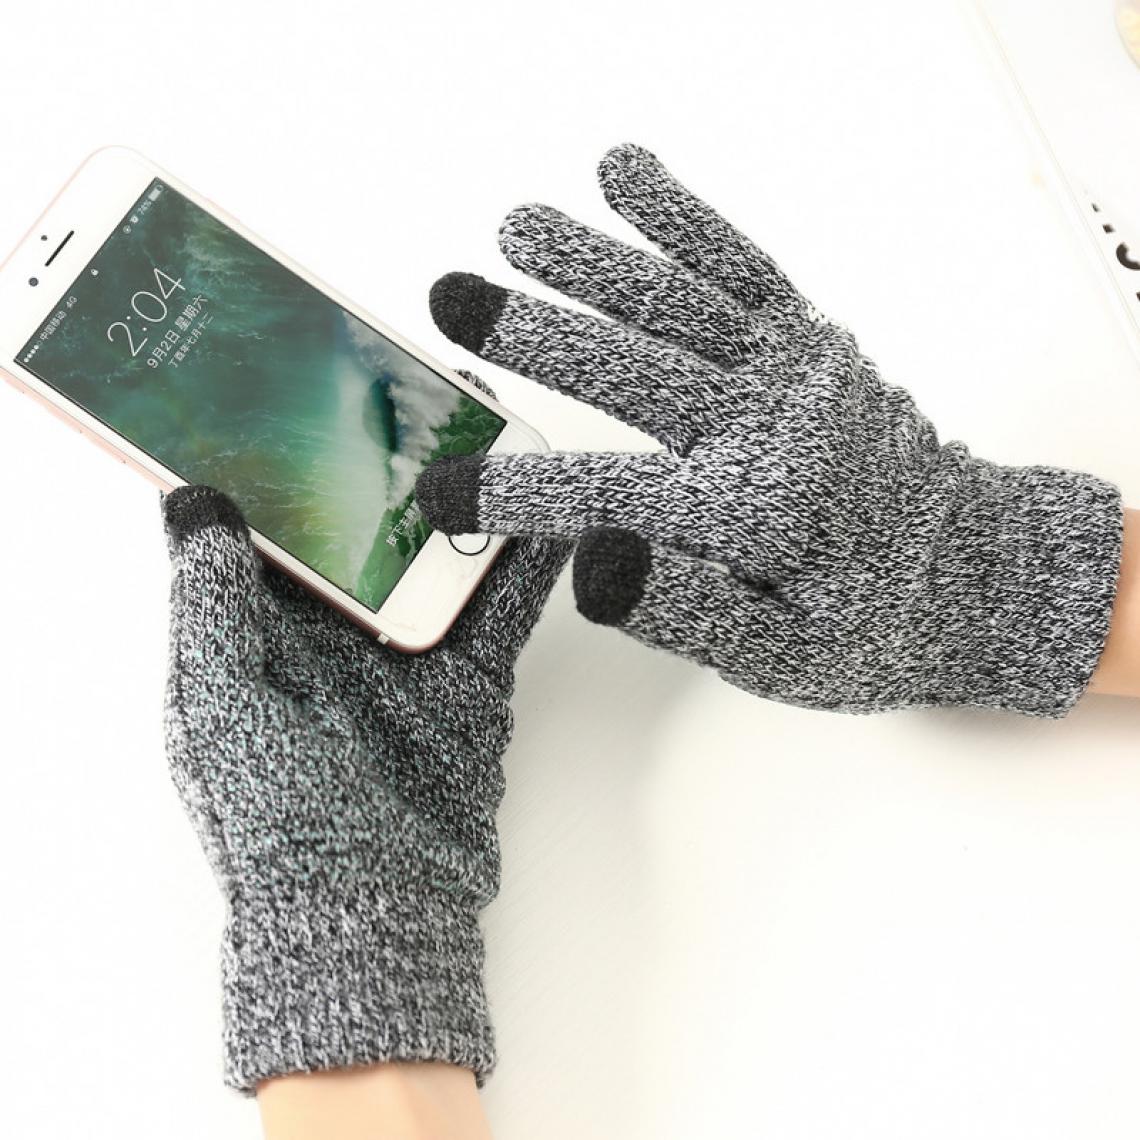 Shot - Gants Homme tactiles pour XIAOMI Mi 9 SE Smartphone Taille M 3 doigts Hiver (NOIR) - Autres accessoires smartphone